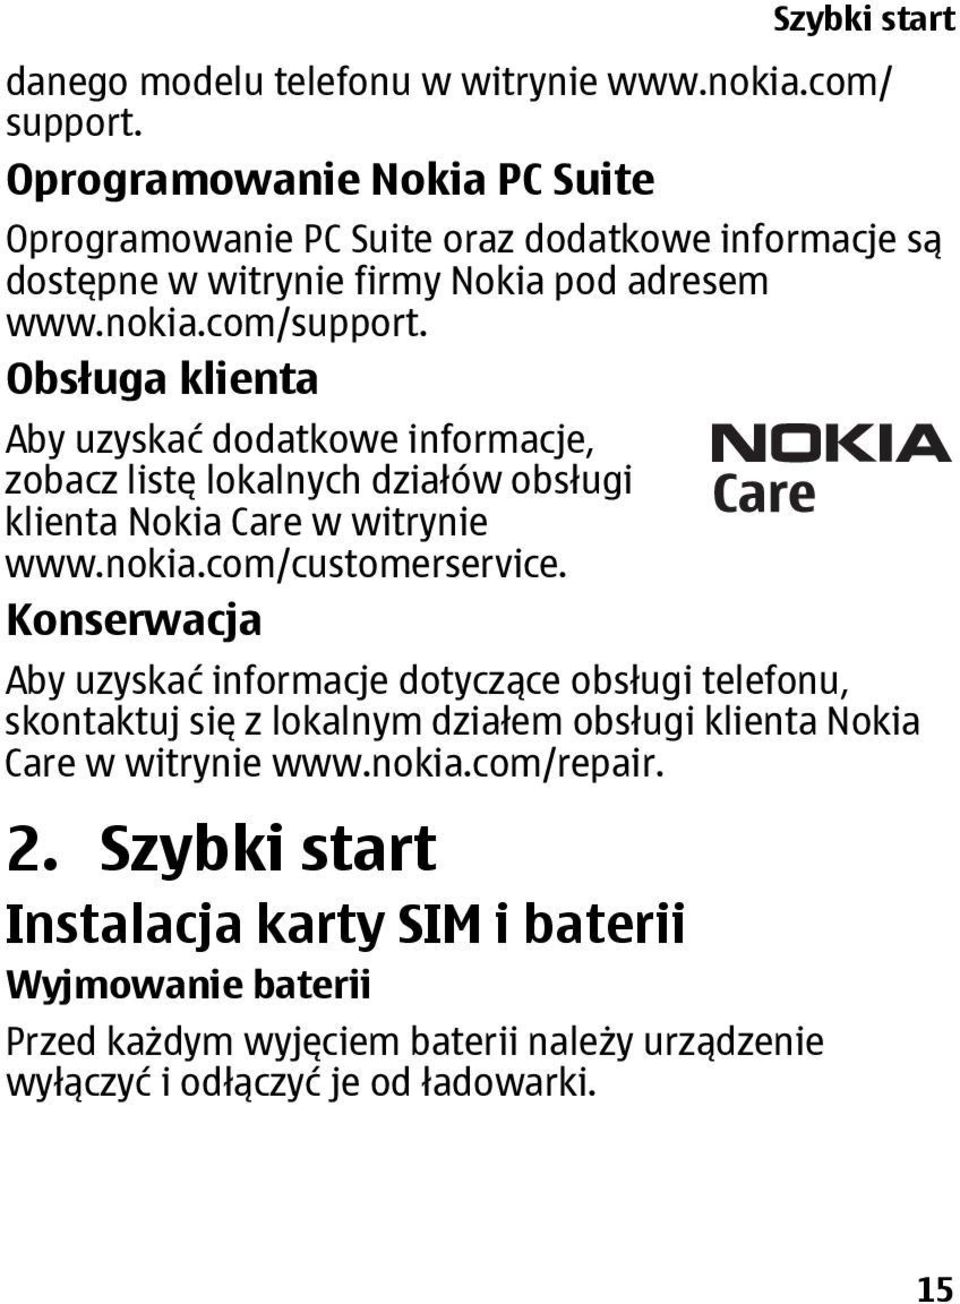 Obsługa klienta Aby uzyskać dodatkowe informacje, zobacz listę lokalnych działów obsługi klienta Nokia Care w witrynie www.nokia.com/customerservice.